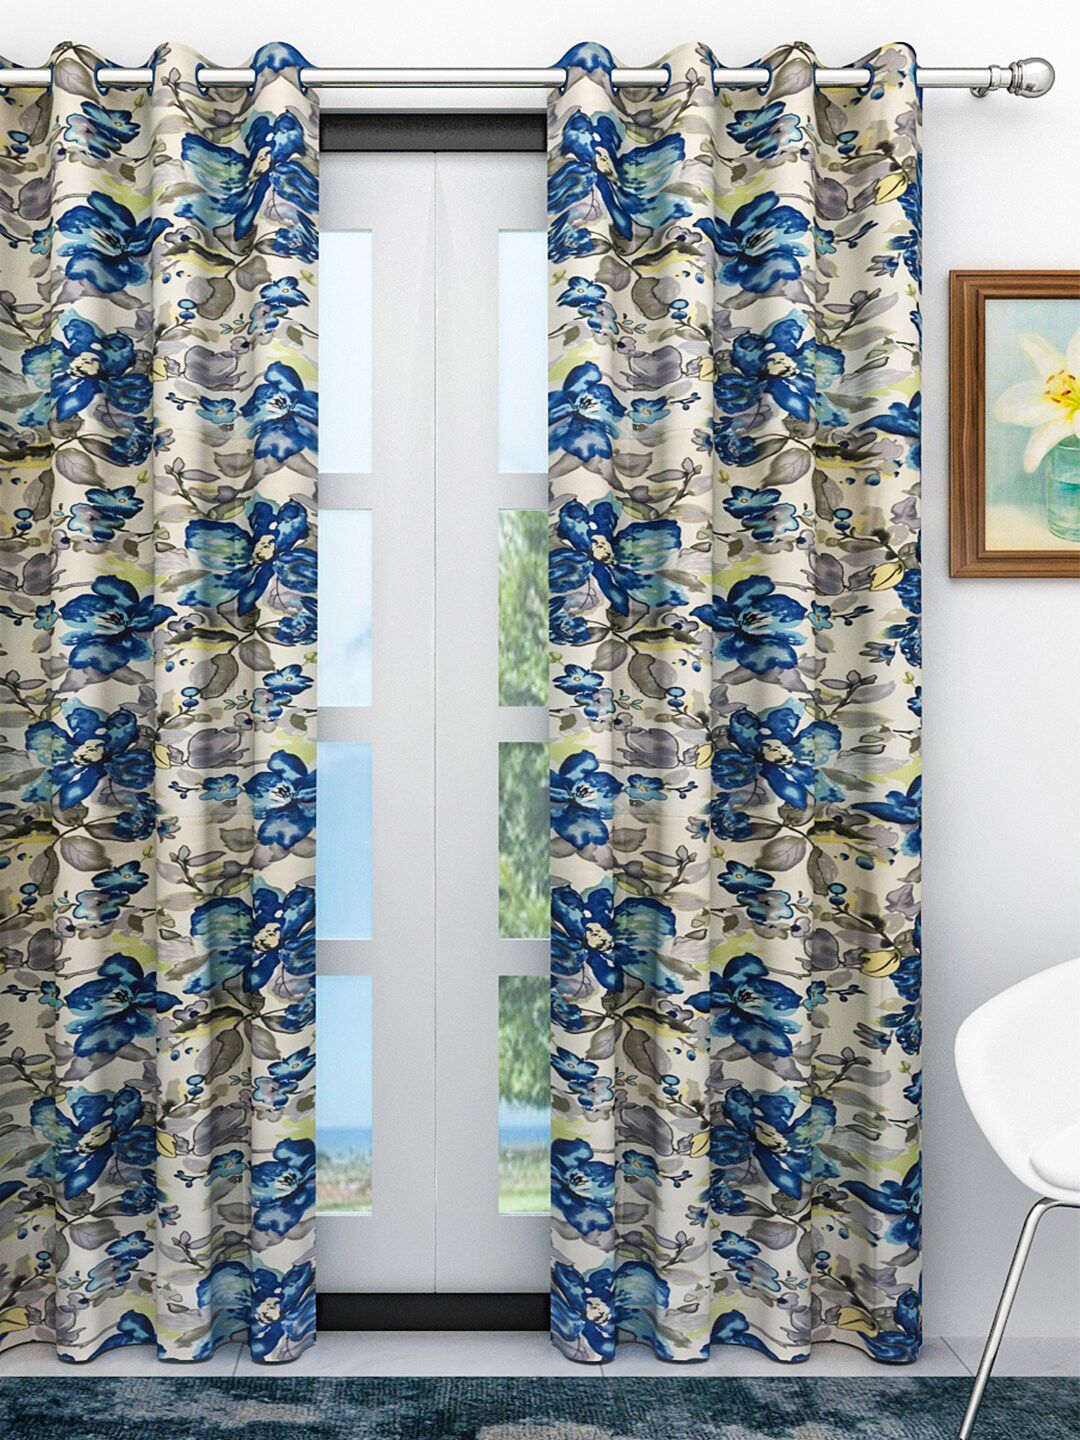 Athom Trendz Multi-colored Floral Printed Single Door Regular 7ft Curtain Price in India